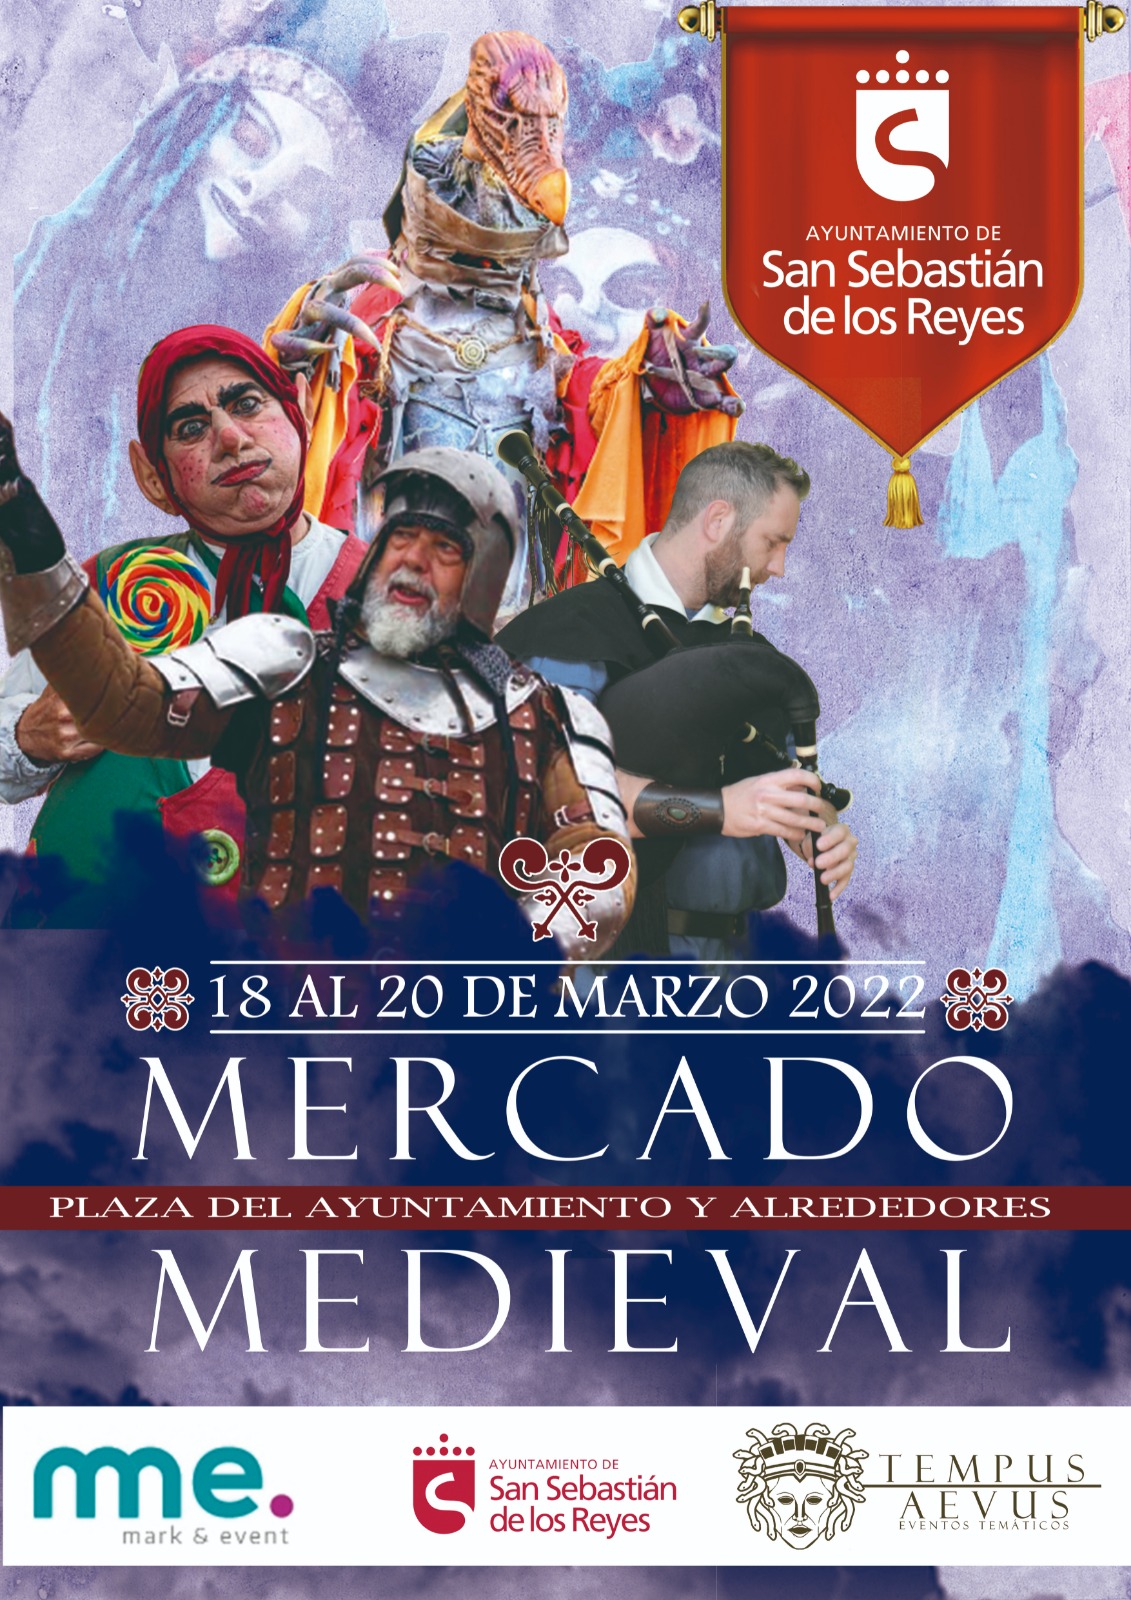 Cartel de promoción del Mercado Medieval